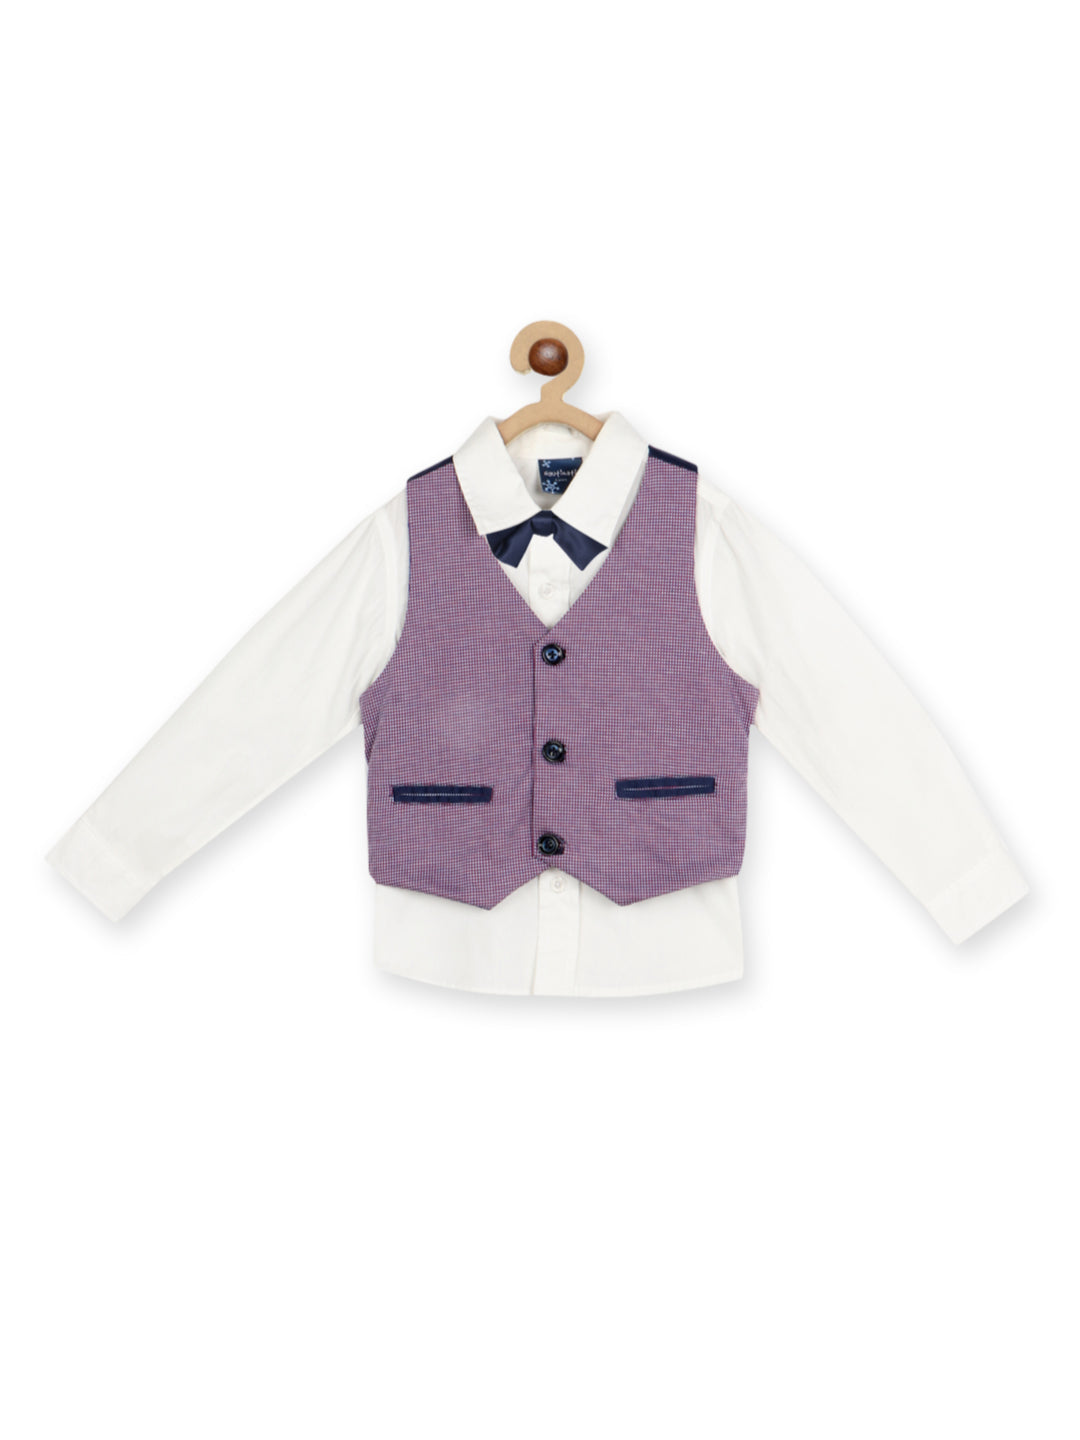 Nautinati Boys Self-Design Pure Cotton 4-Piece Single-Breasted Suit